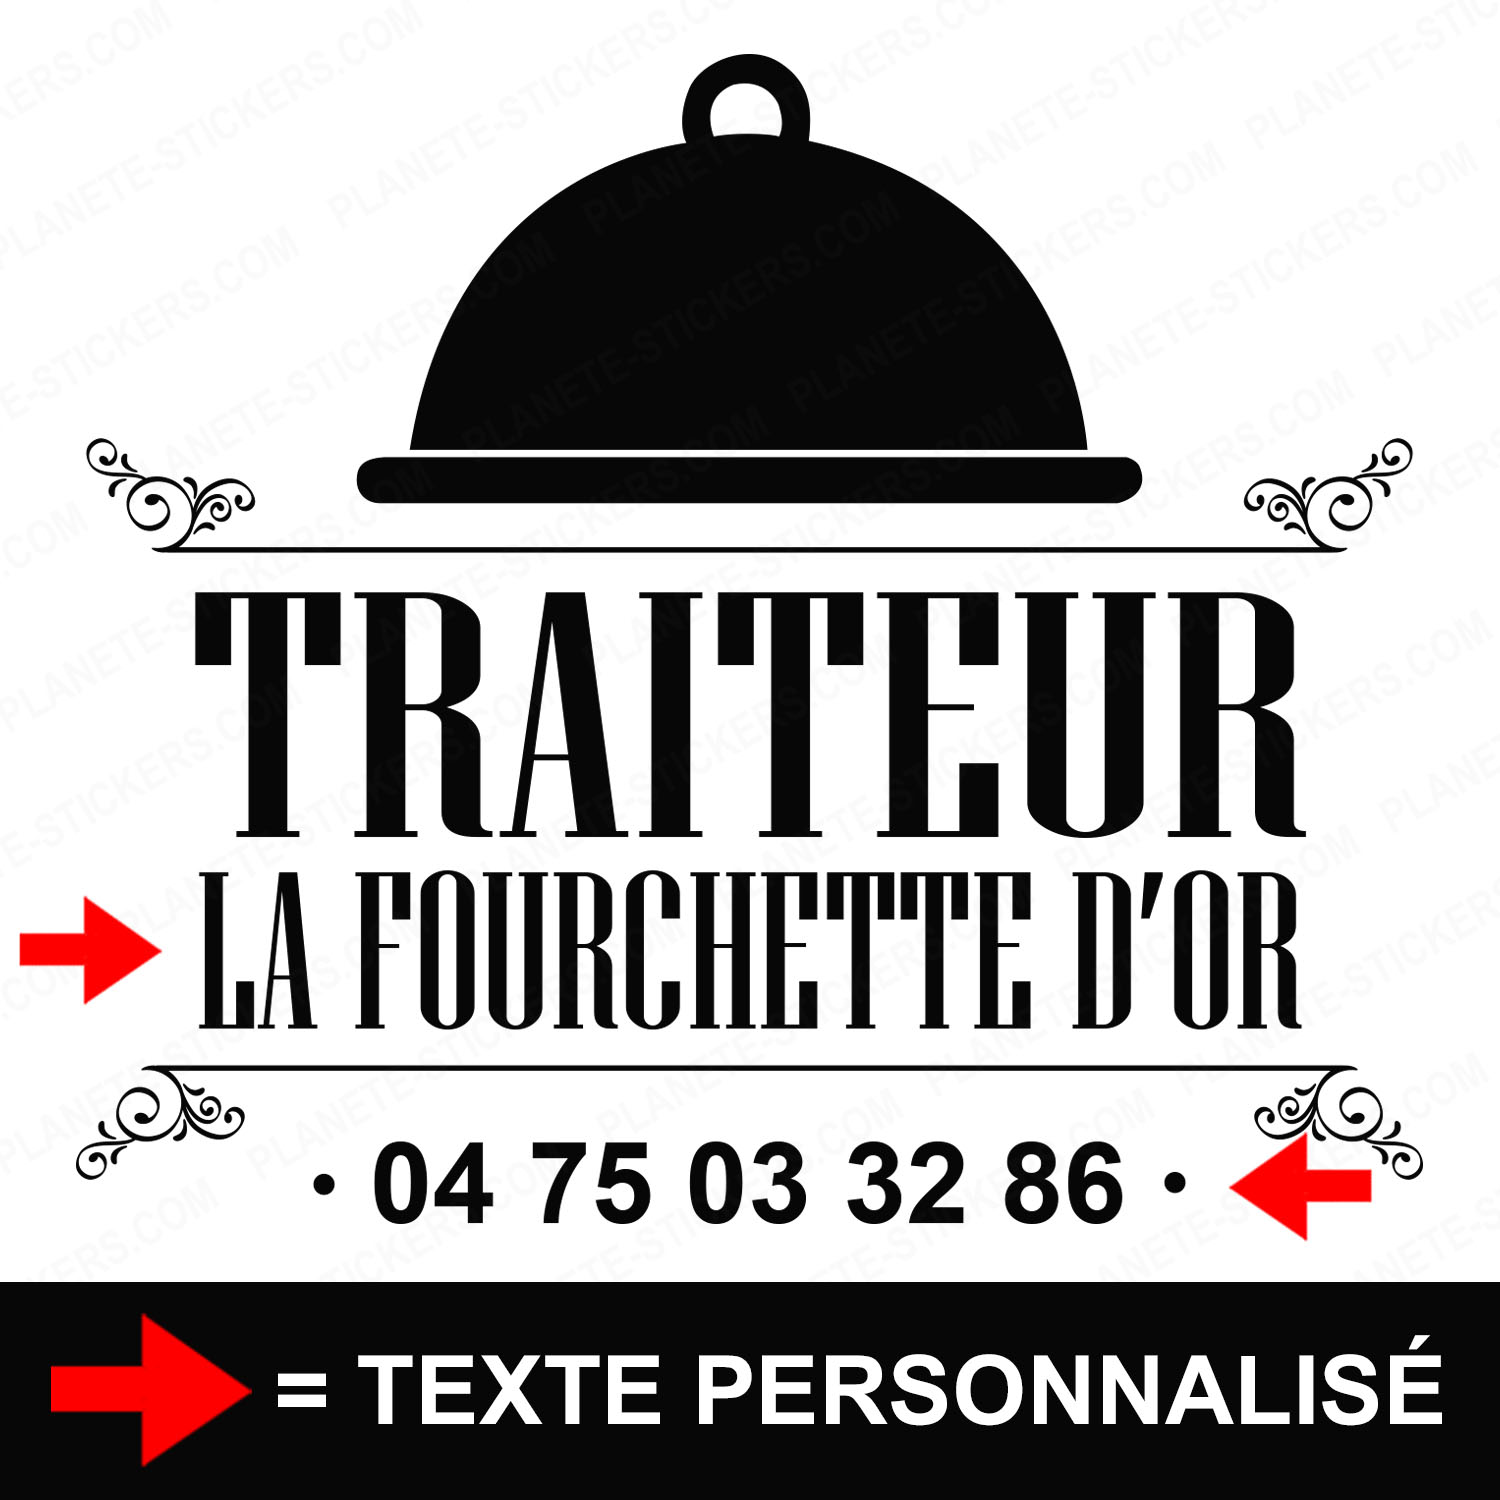 ref18traiteurvitrine-stickers-traiteur-vitrine-sticker-personnalisé-autocollant-pro-restaurateur-restaurant-vitre-professionnel-logo-cloche-2